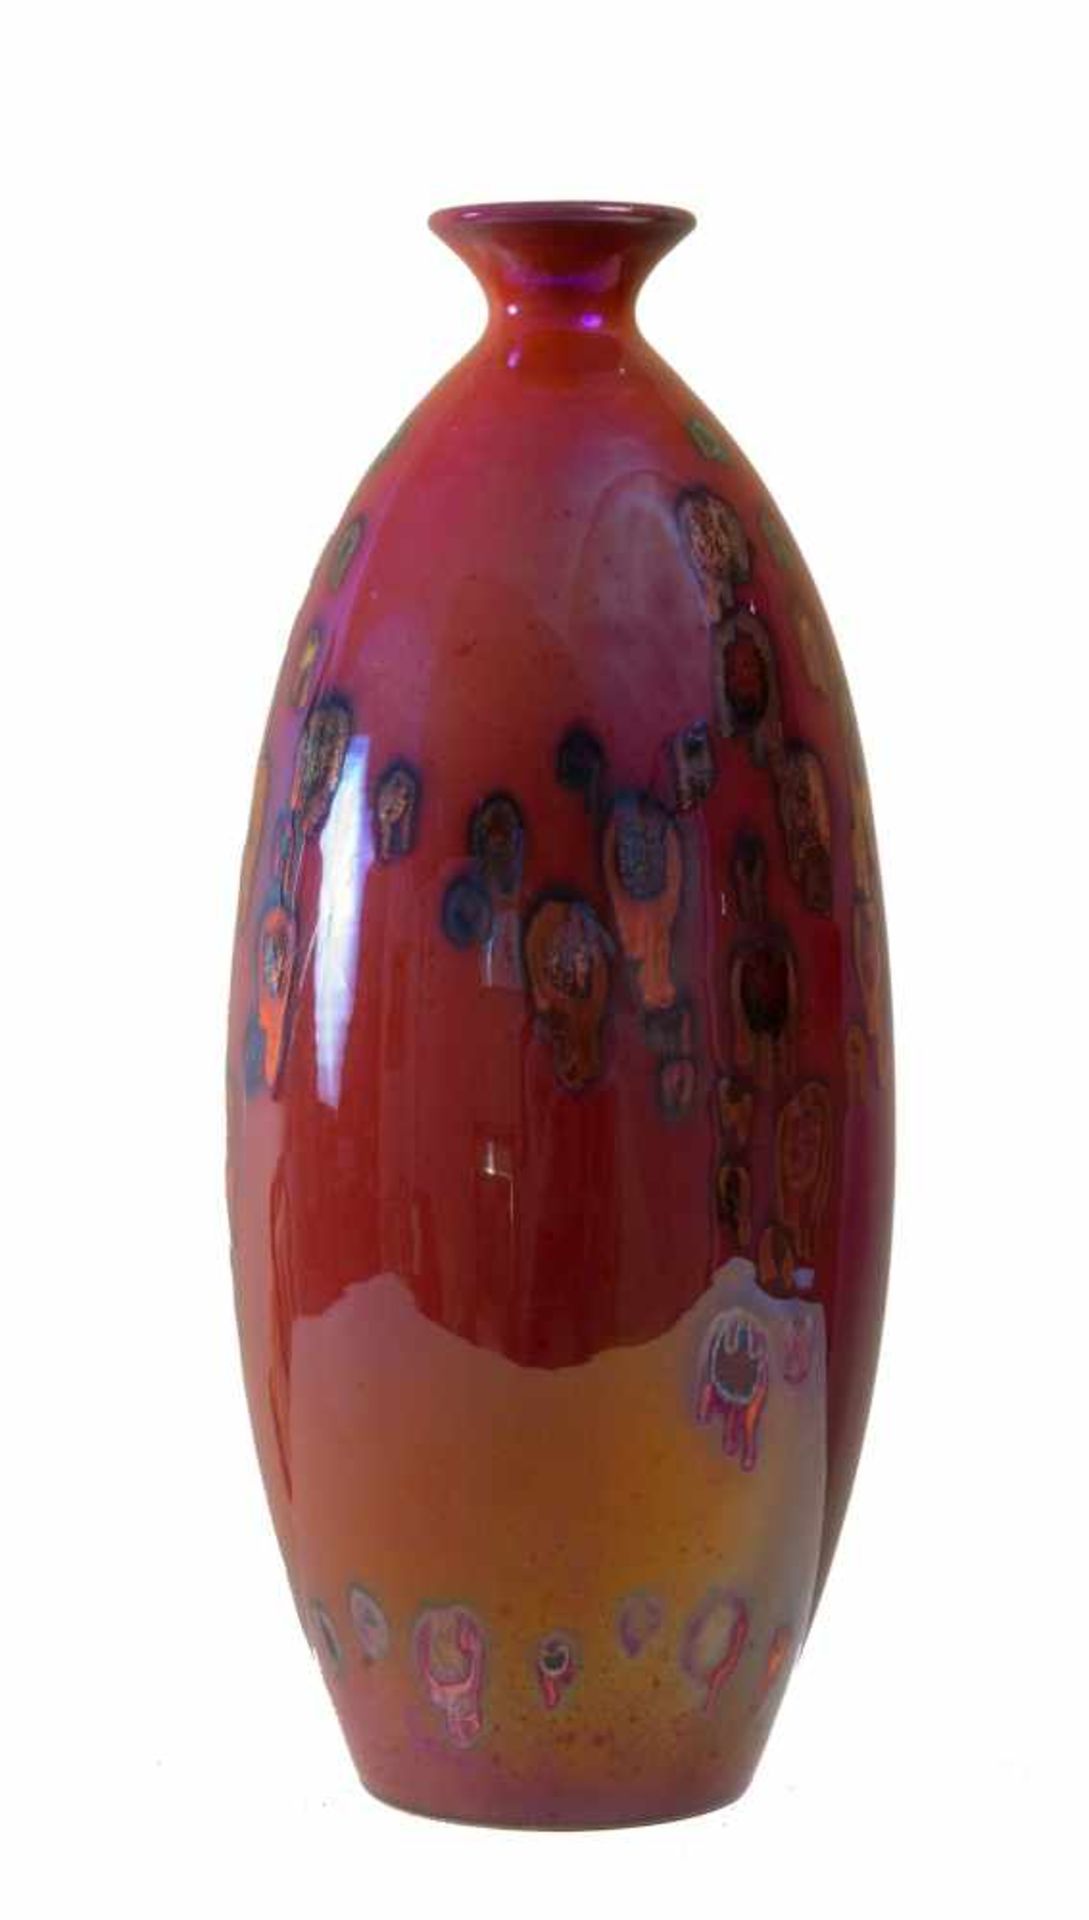 GIORDANO TRONCONI (Faenza, 1932). Vaso in maiolica a lustro. Decorazione astratta su base rossa.